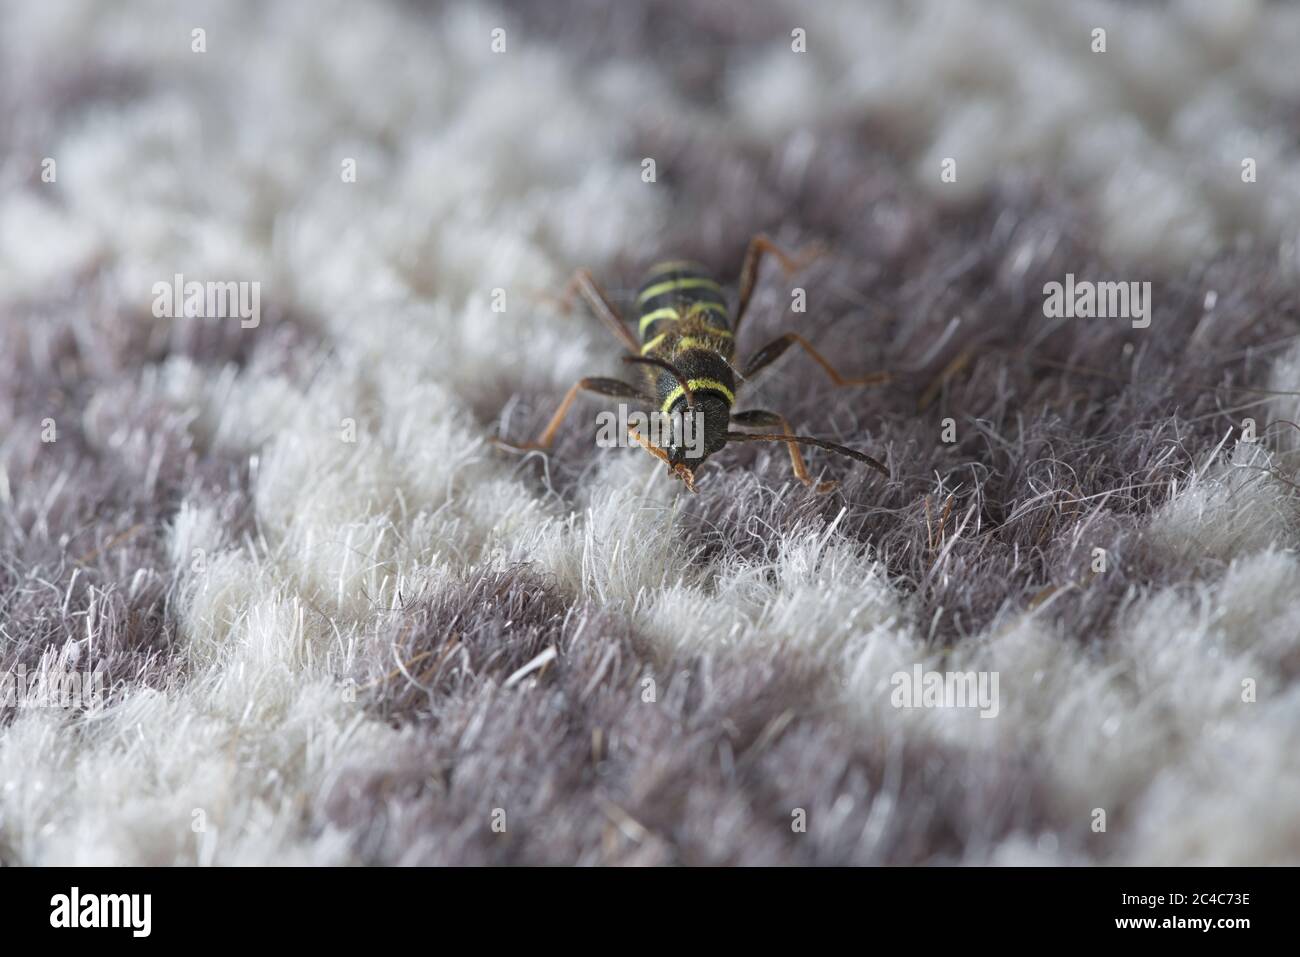 L'scarabeo WASP, Clytus arietis, gira la testa per sposare la gamba anteriore destra mentre esplora il tappeto bianco e viola in un ambiente domestico della casa. Foto Stock